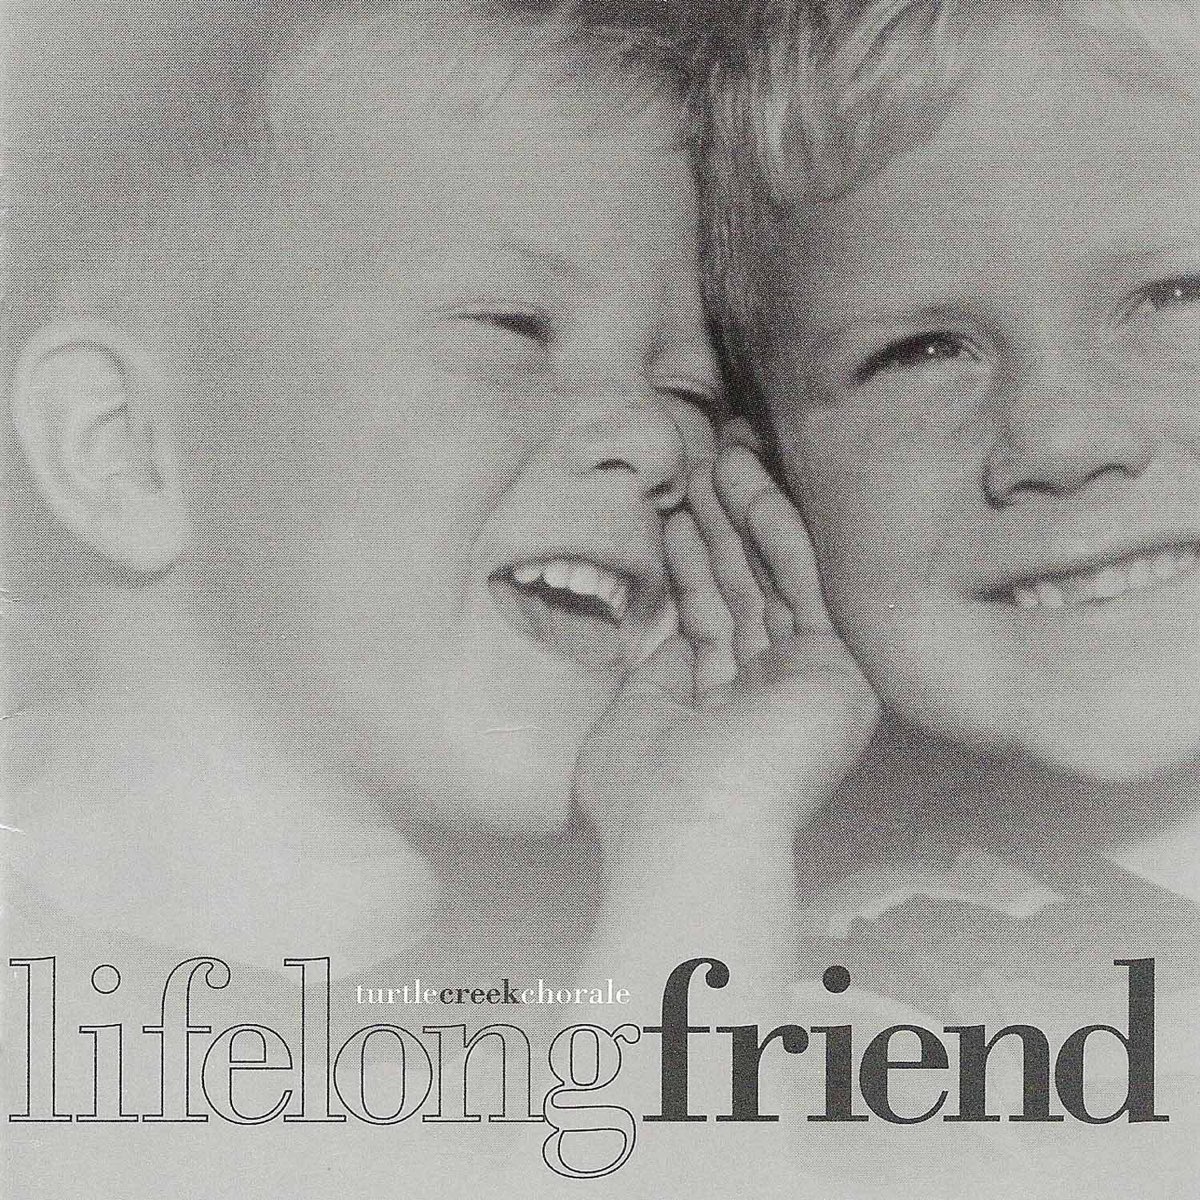 Life long friend. Lifelong friends. My true lifelong friend. True lifelong friend.